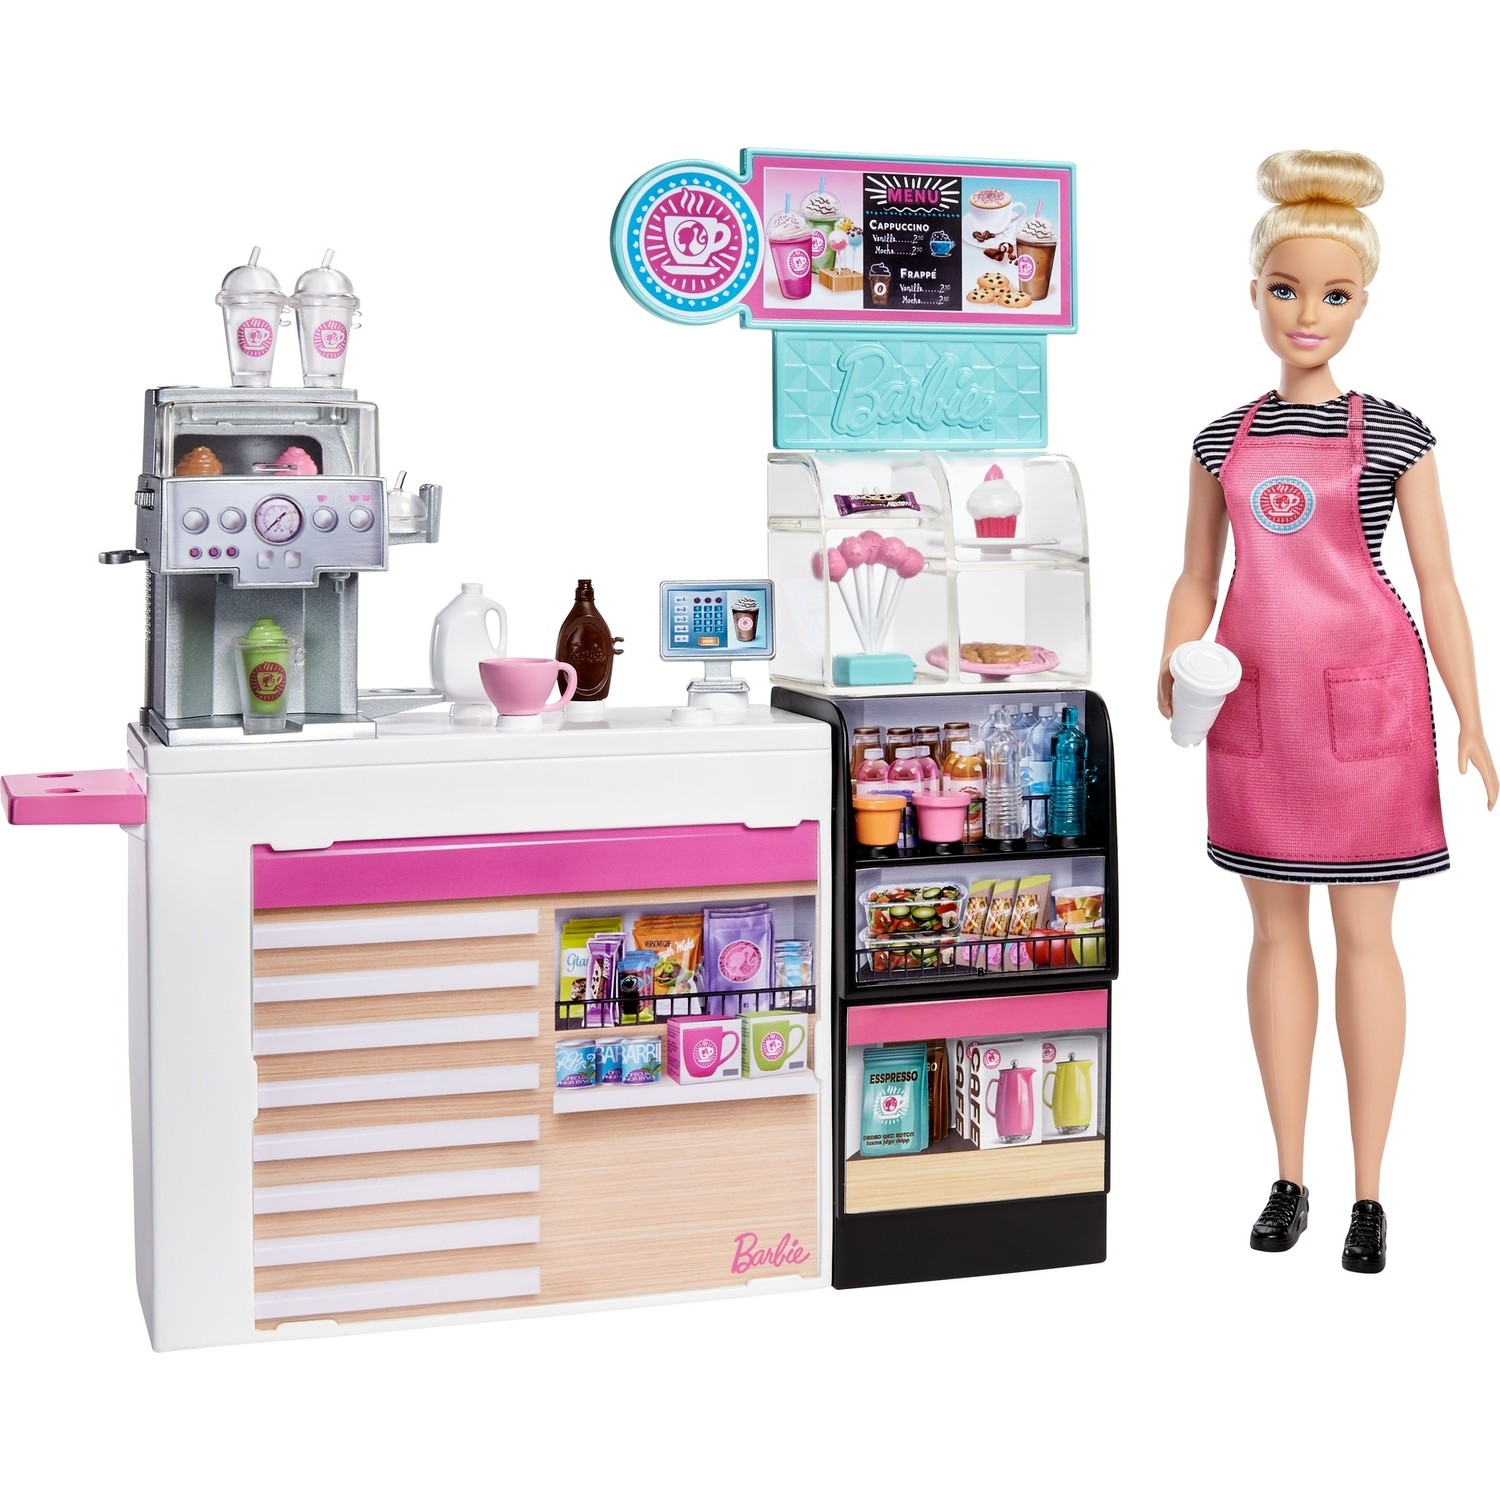 Dolls store. Барби кофейня Барби кофейня. Набор Barbie Барби и друзья кухня повар и официант, fcp66. Барби кофейня игровой набор. Игровой набор Barbie кофейня, gmw03.